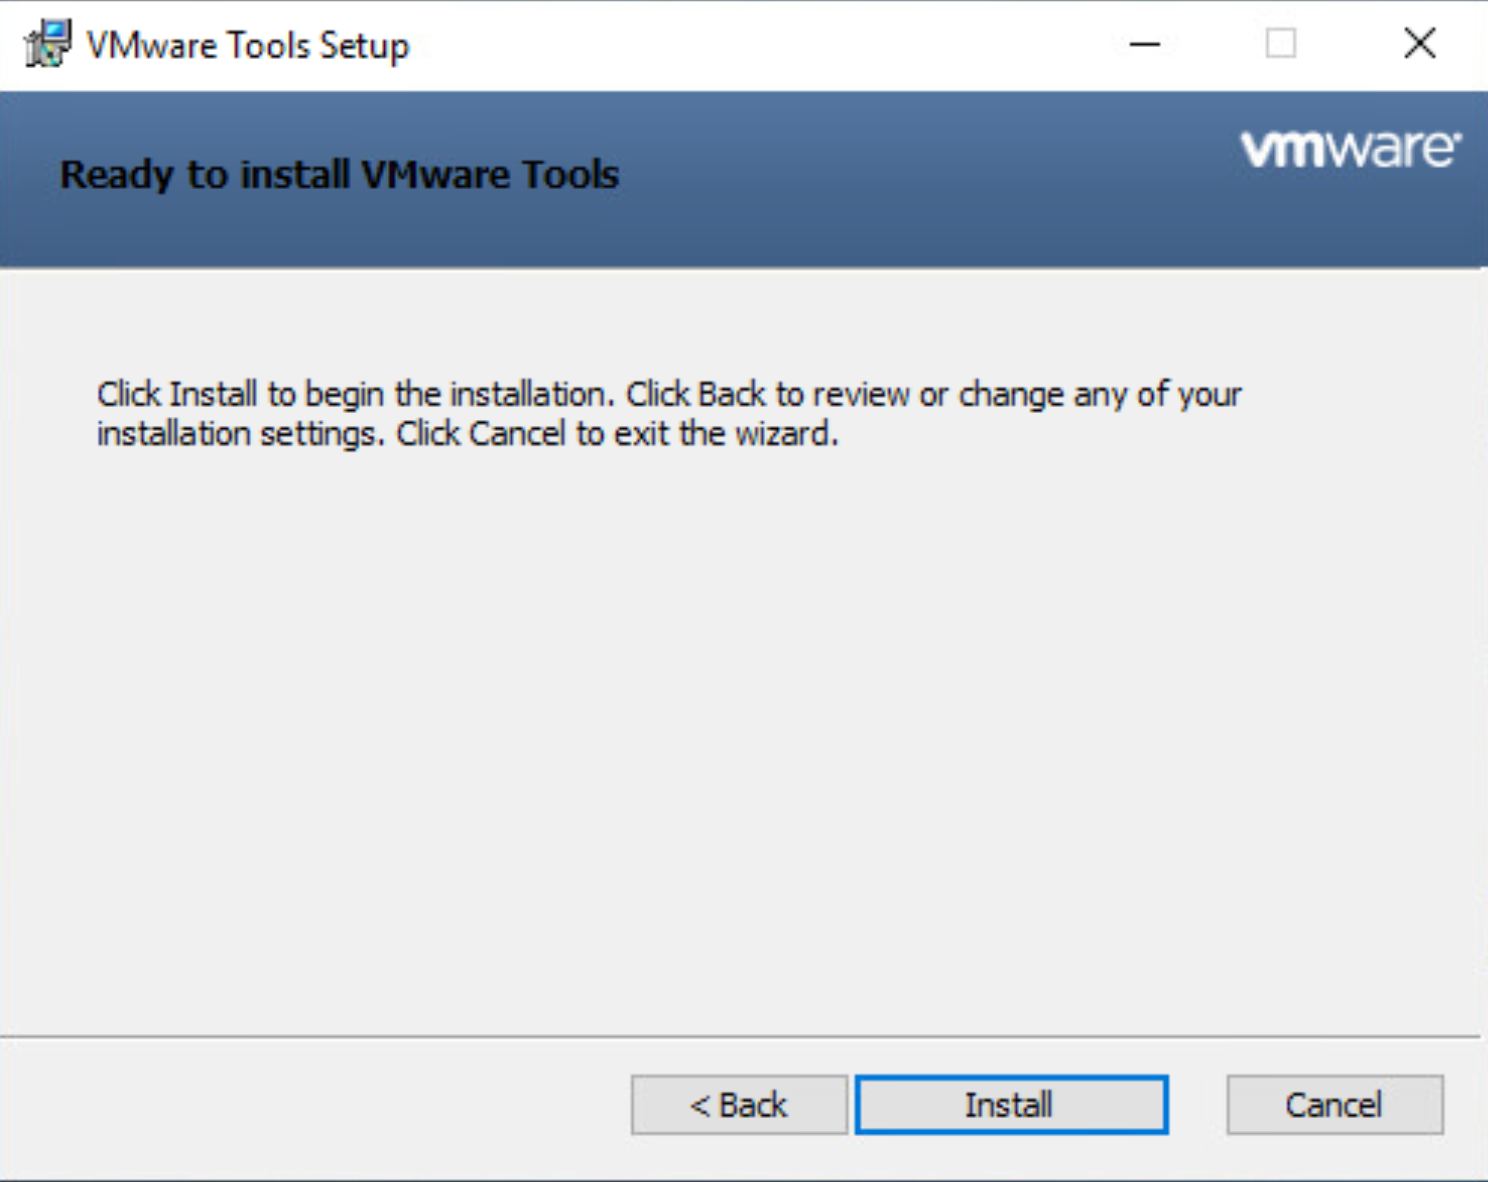 Schermopname van het installatievenster van VMware Tools waarin wordt aangegeven dat het klaar is om te worden geïnstalleerd.